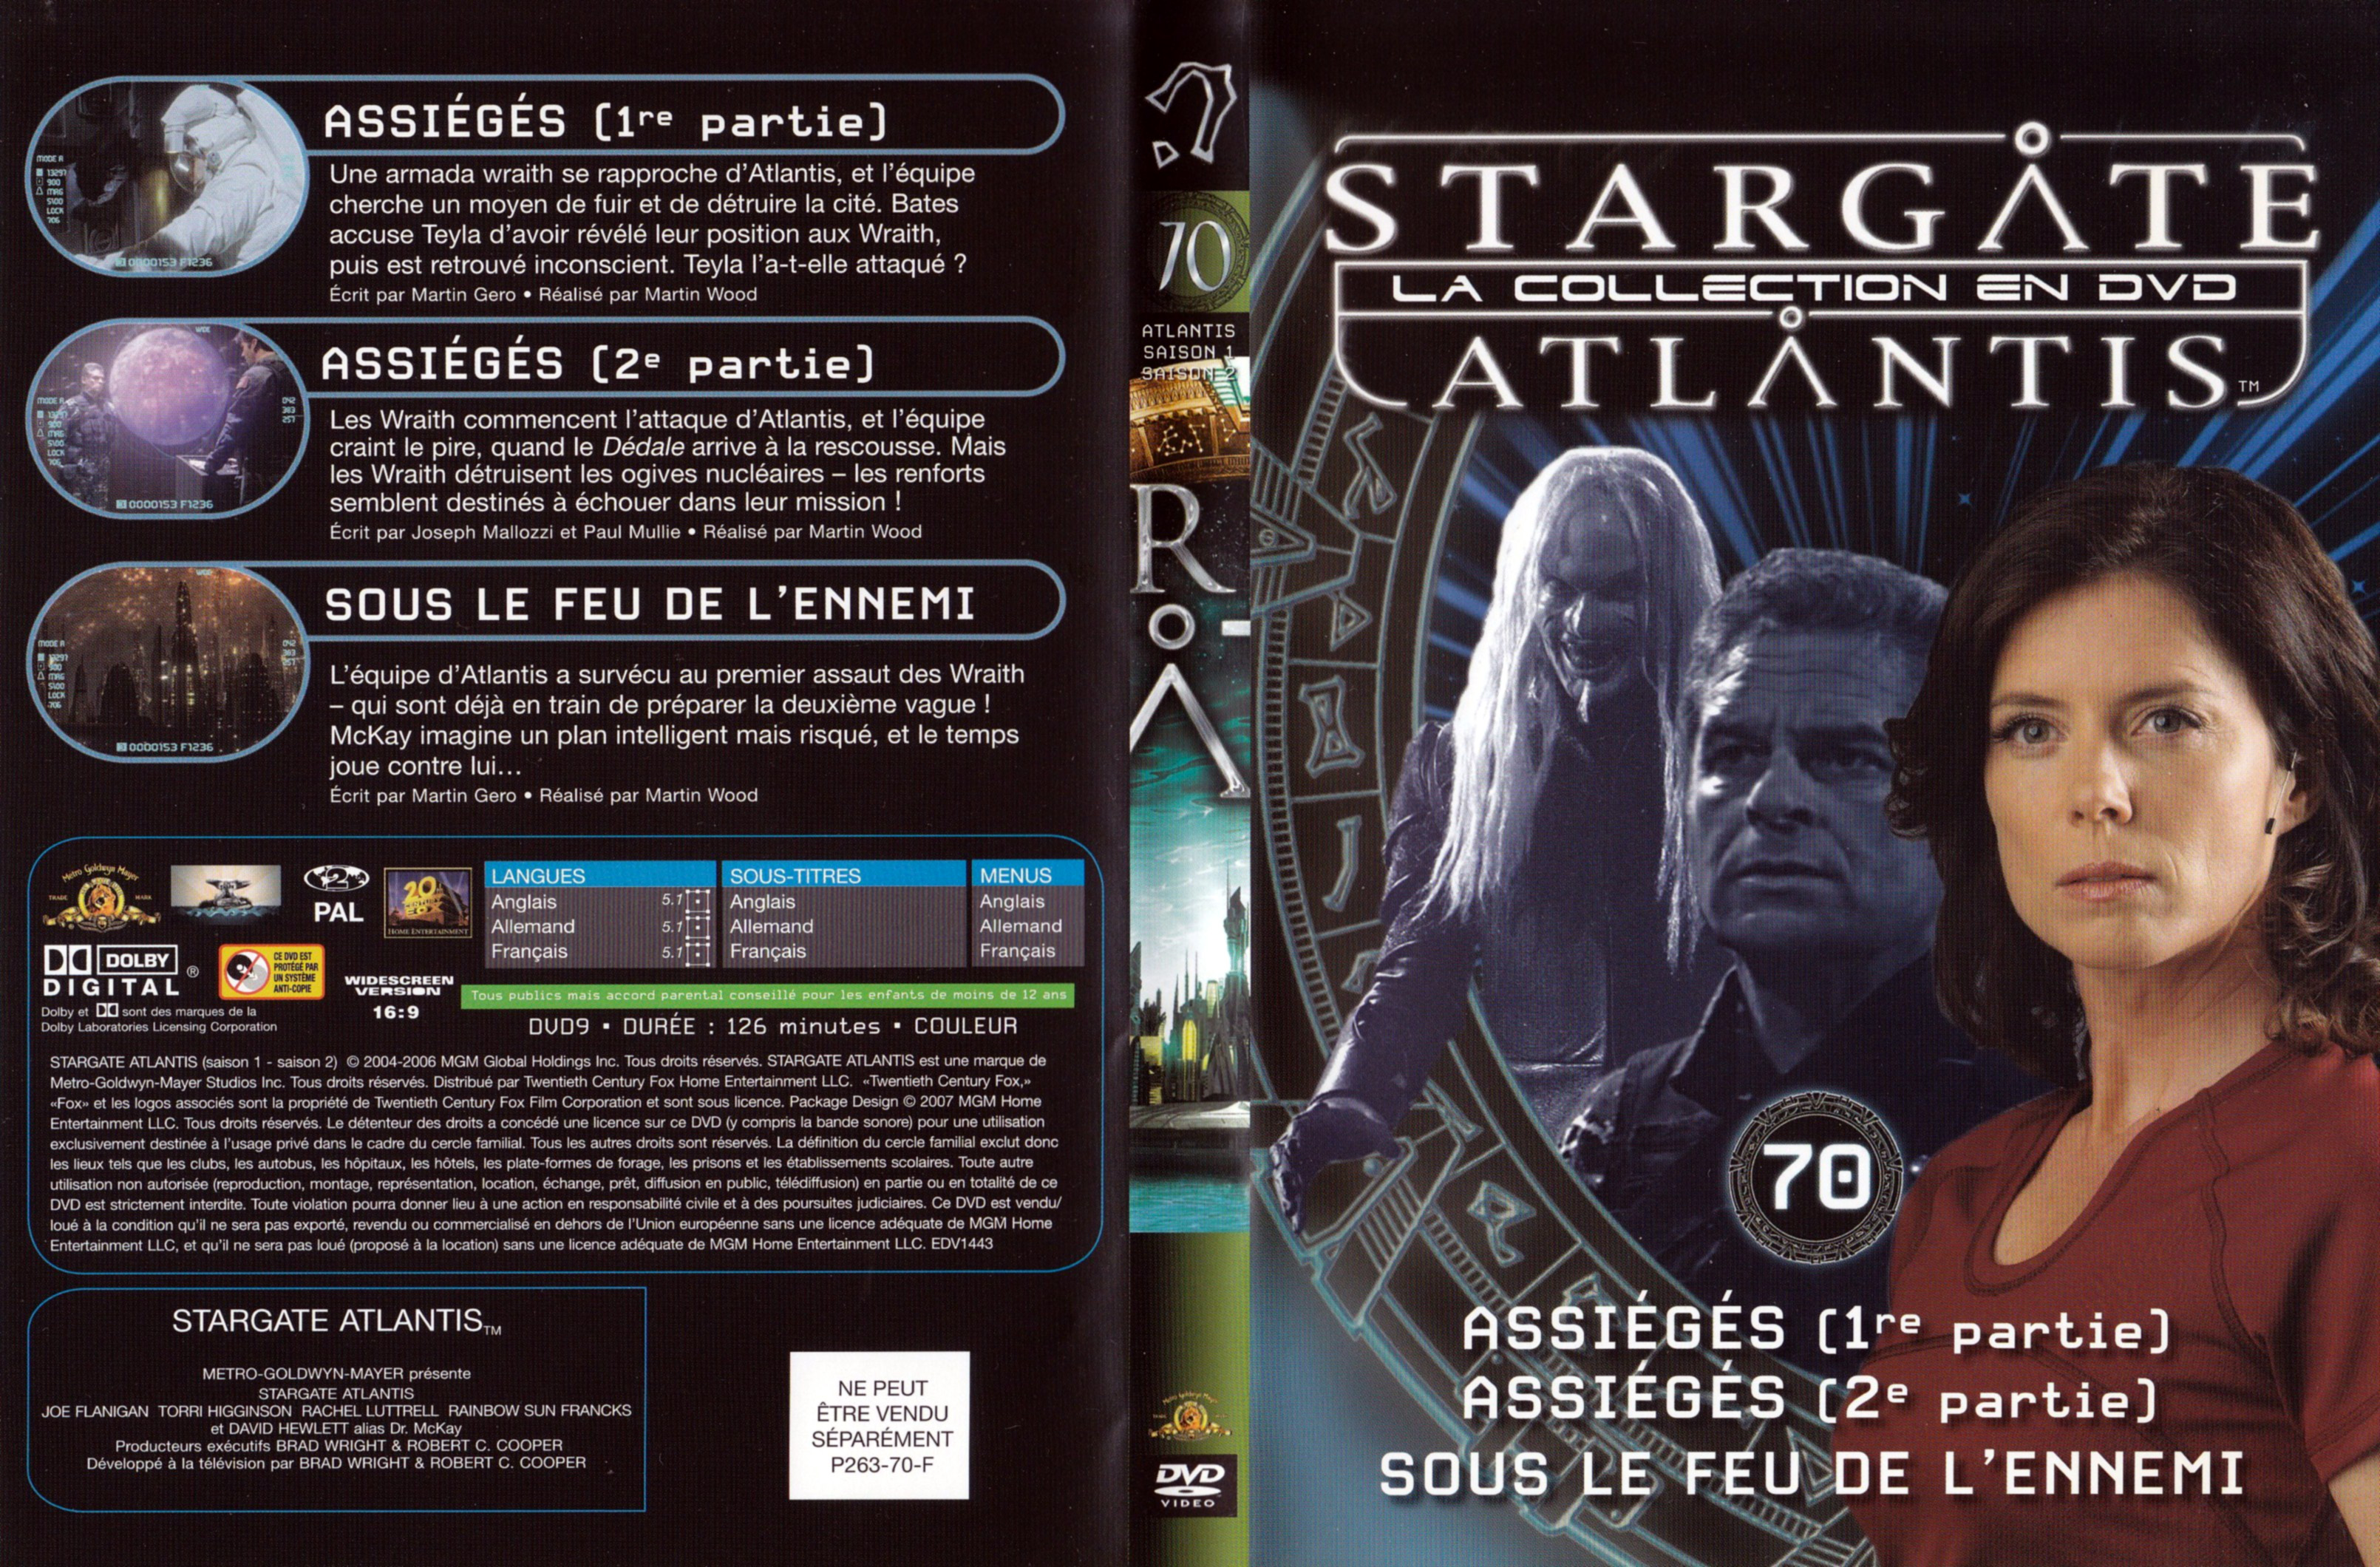 Jaquette DVD Stargate SG1 Atlantis Saison 1-2 vol 70